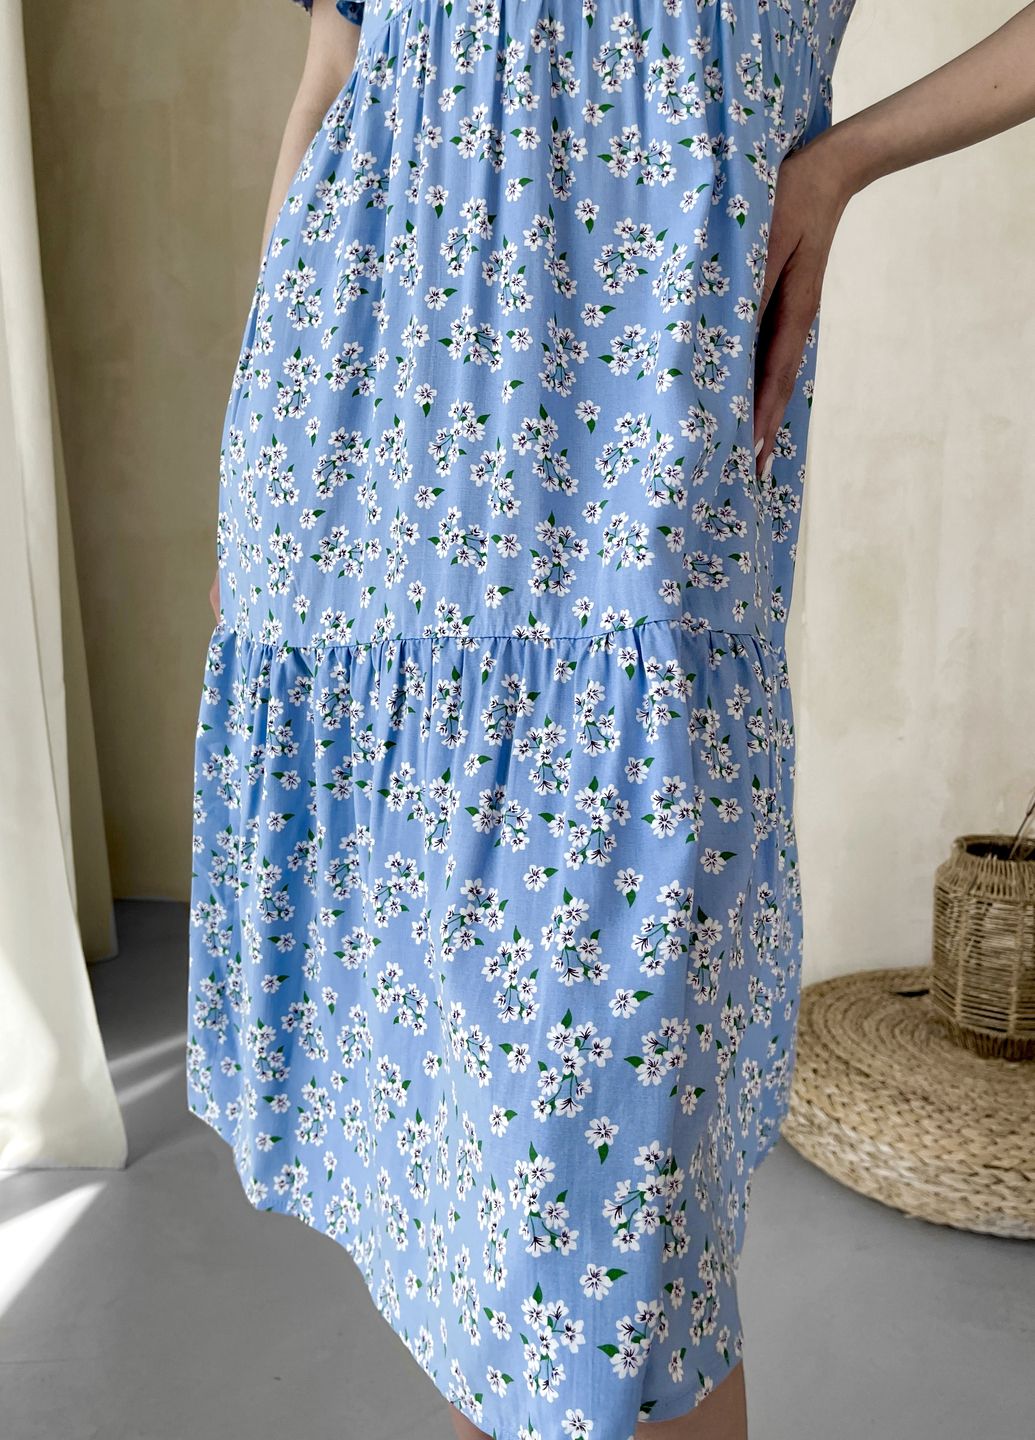 Купить Женское платье до колена с цветочным принтом и коротким рукавом голубое Merlini Ферро 700000262, размер 42-44 (S-M) в интернет-магазине